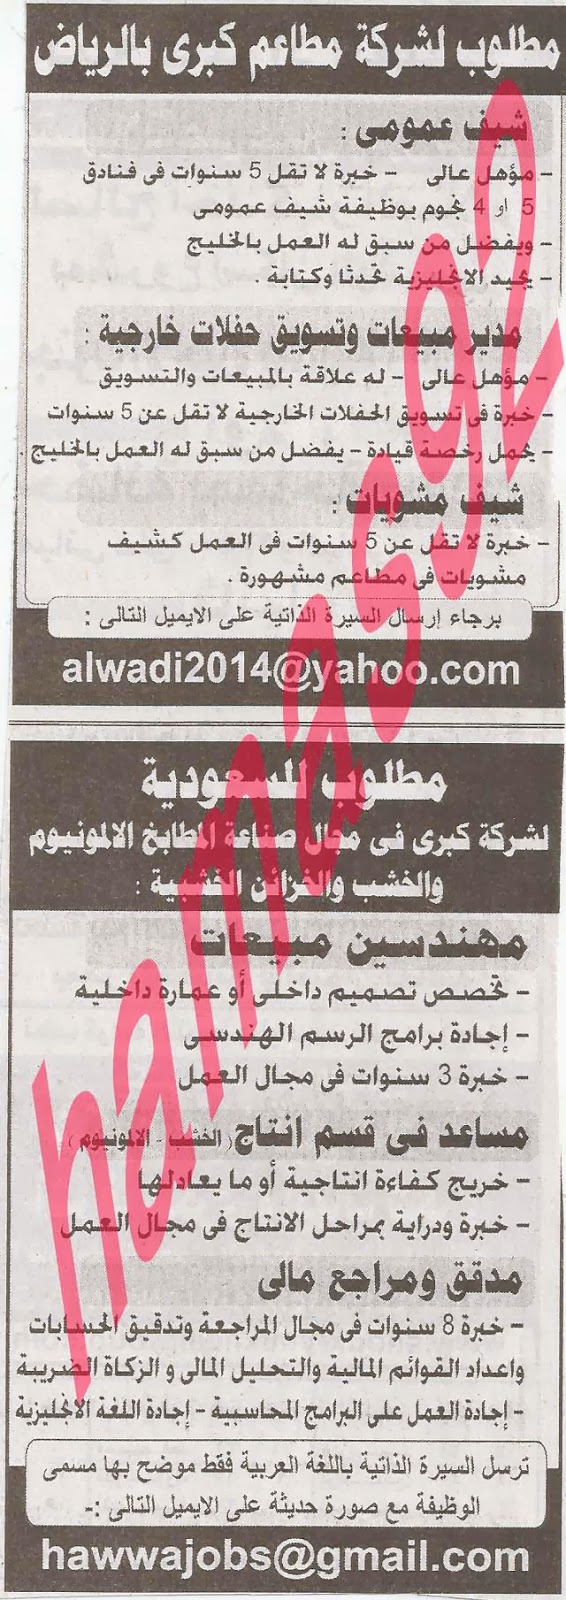 وظائف فى دول الخليج بجريدة الاهرام الجمعة 25-10-2013 31